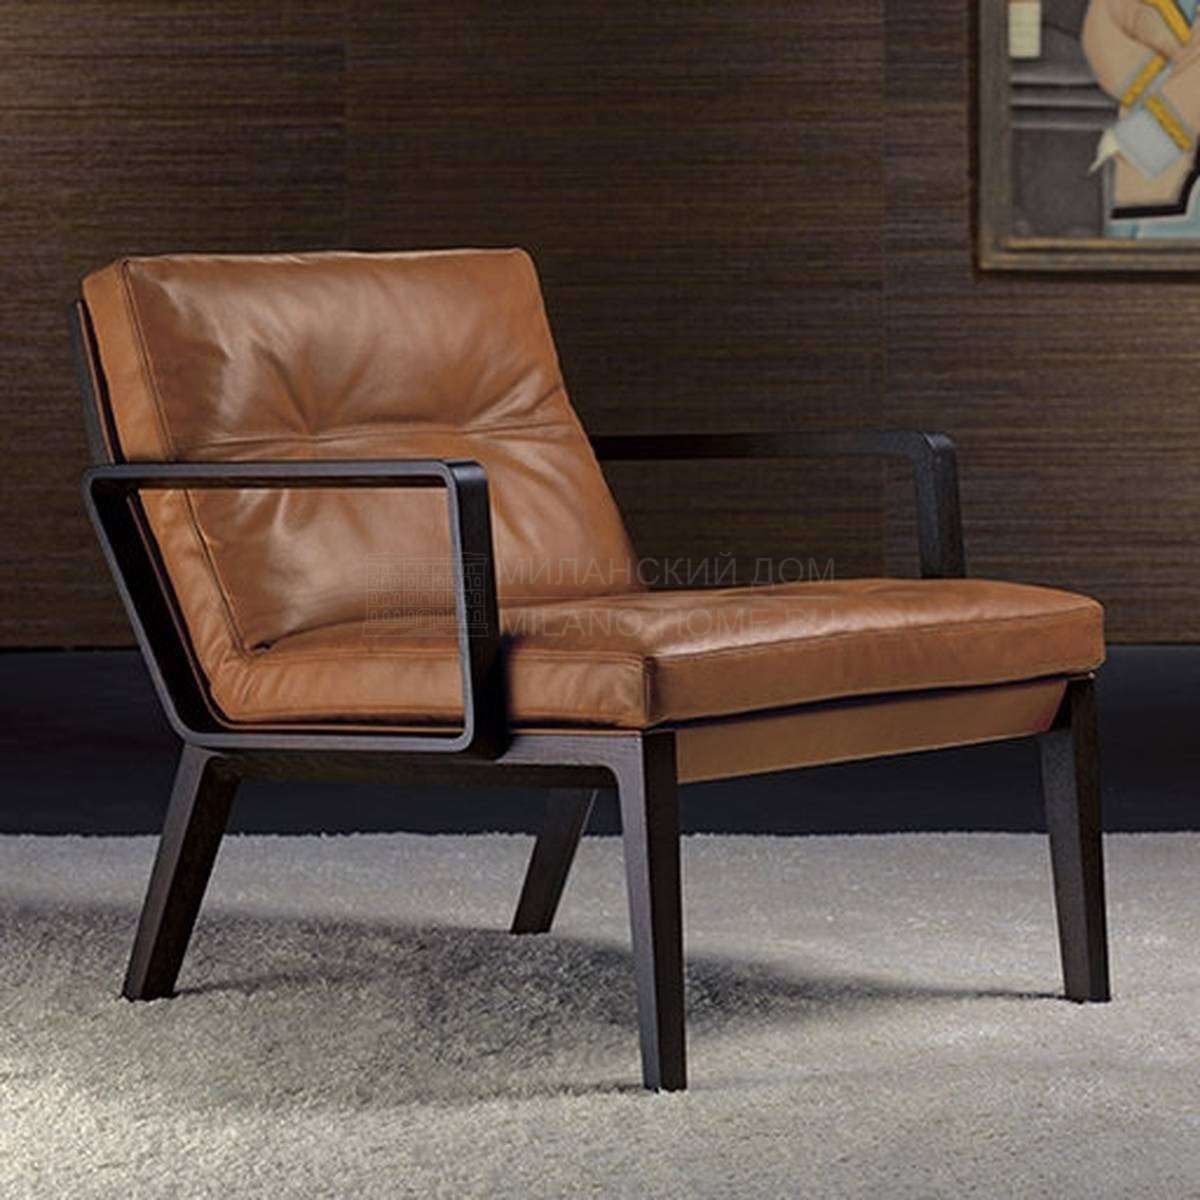 Кресло Andoo Lounge/armchair из Германии фабрики WALTER KNOLL